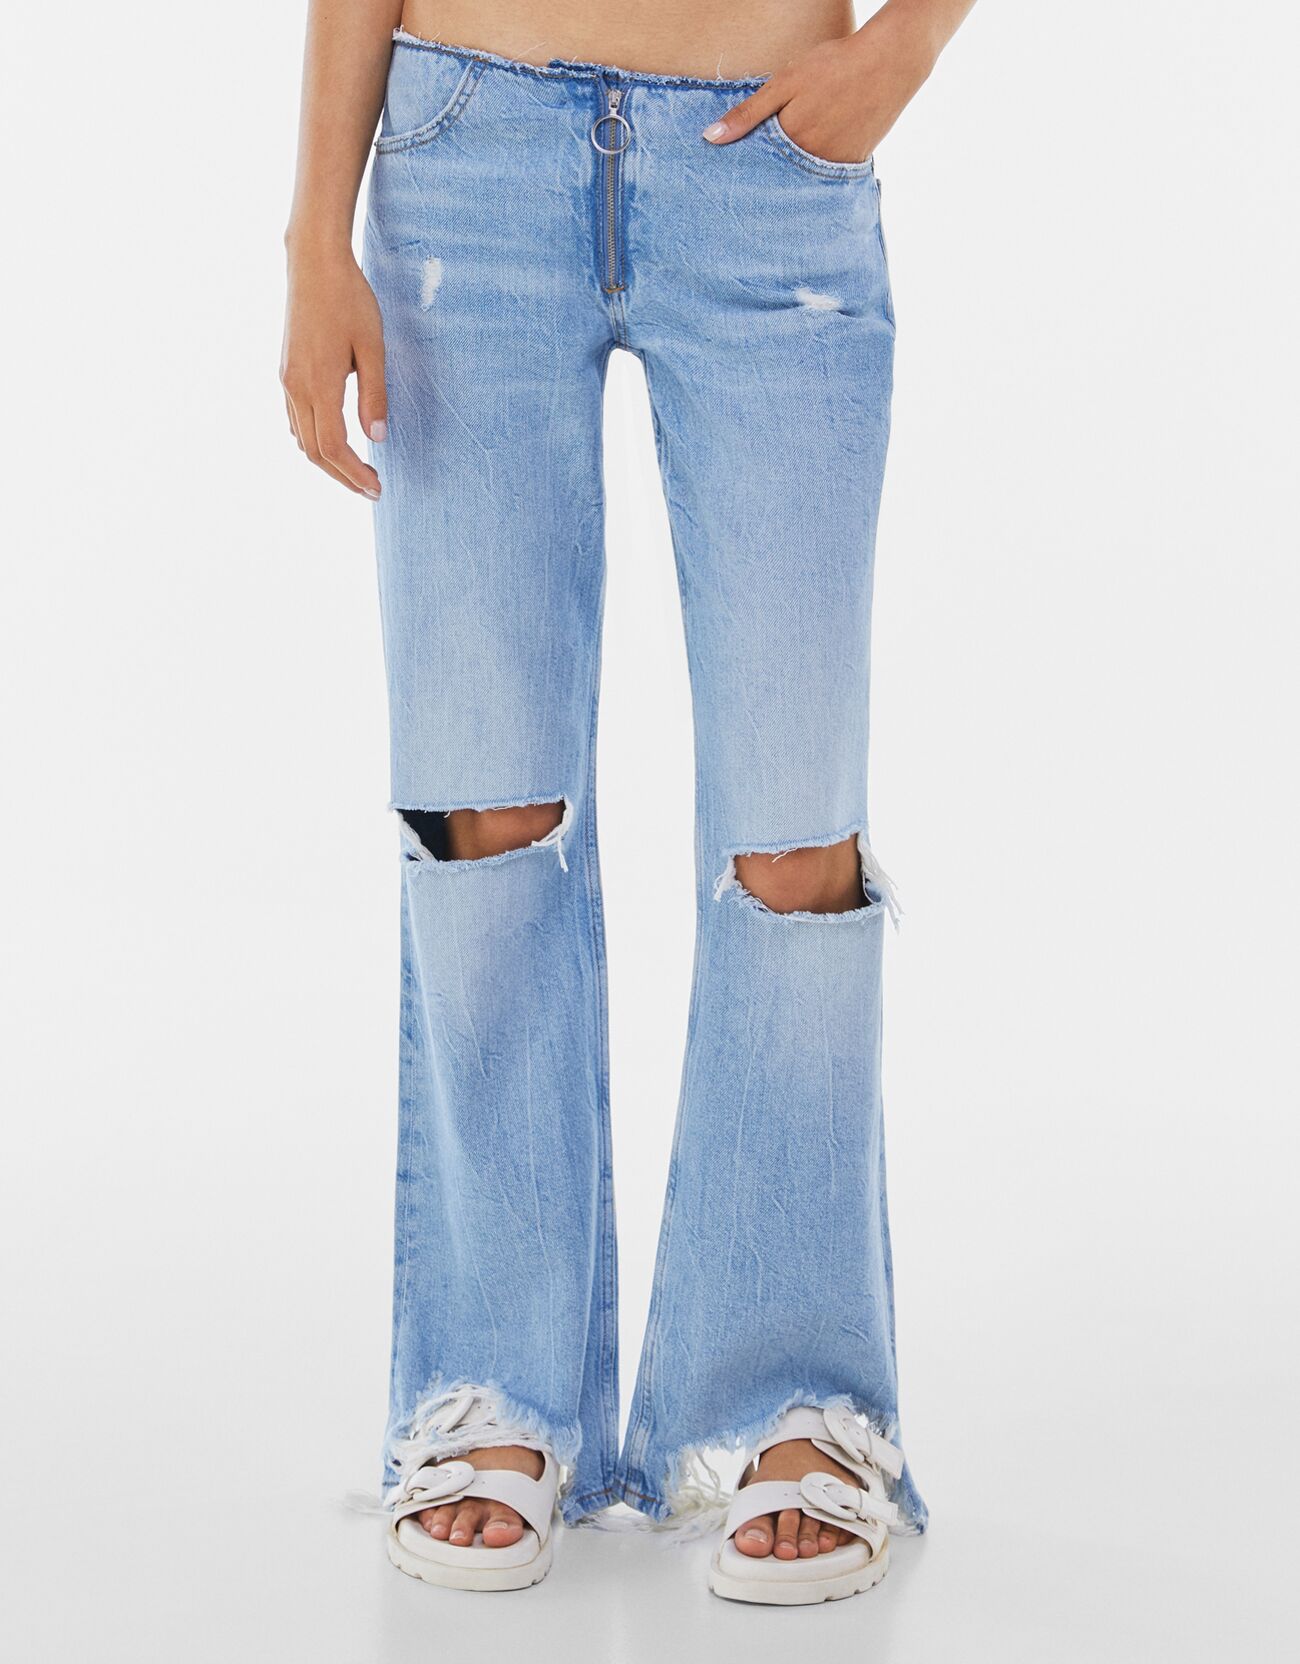 Расклешенные джинсы с низкой посадкой Синий застиранный Bershka